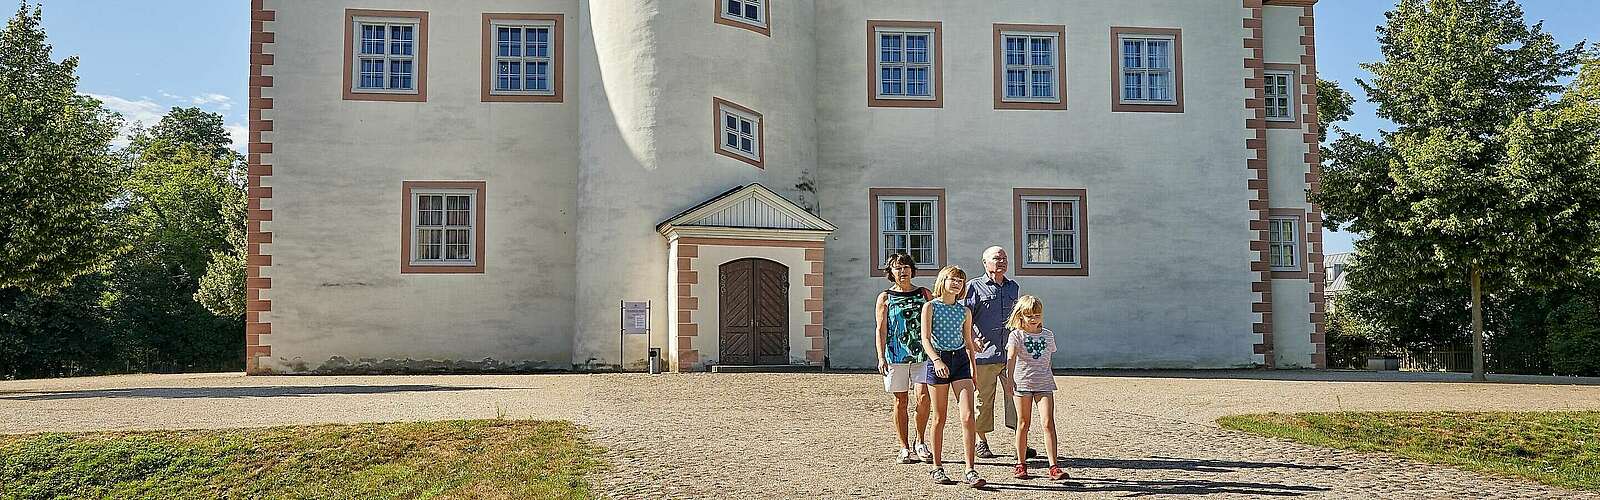 Familie vor Schloss Königs Wusterhausen,
        
    

        Foto: Fotograf / Lizenz - Media Import/Florian Trykowski